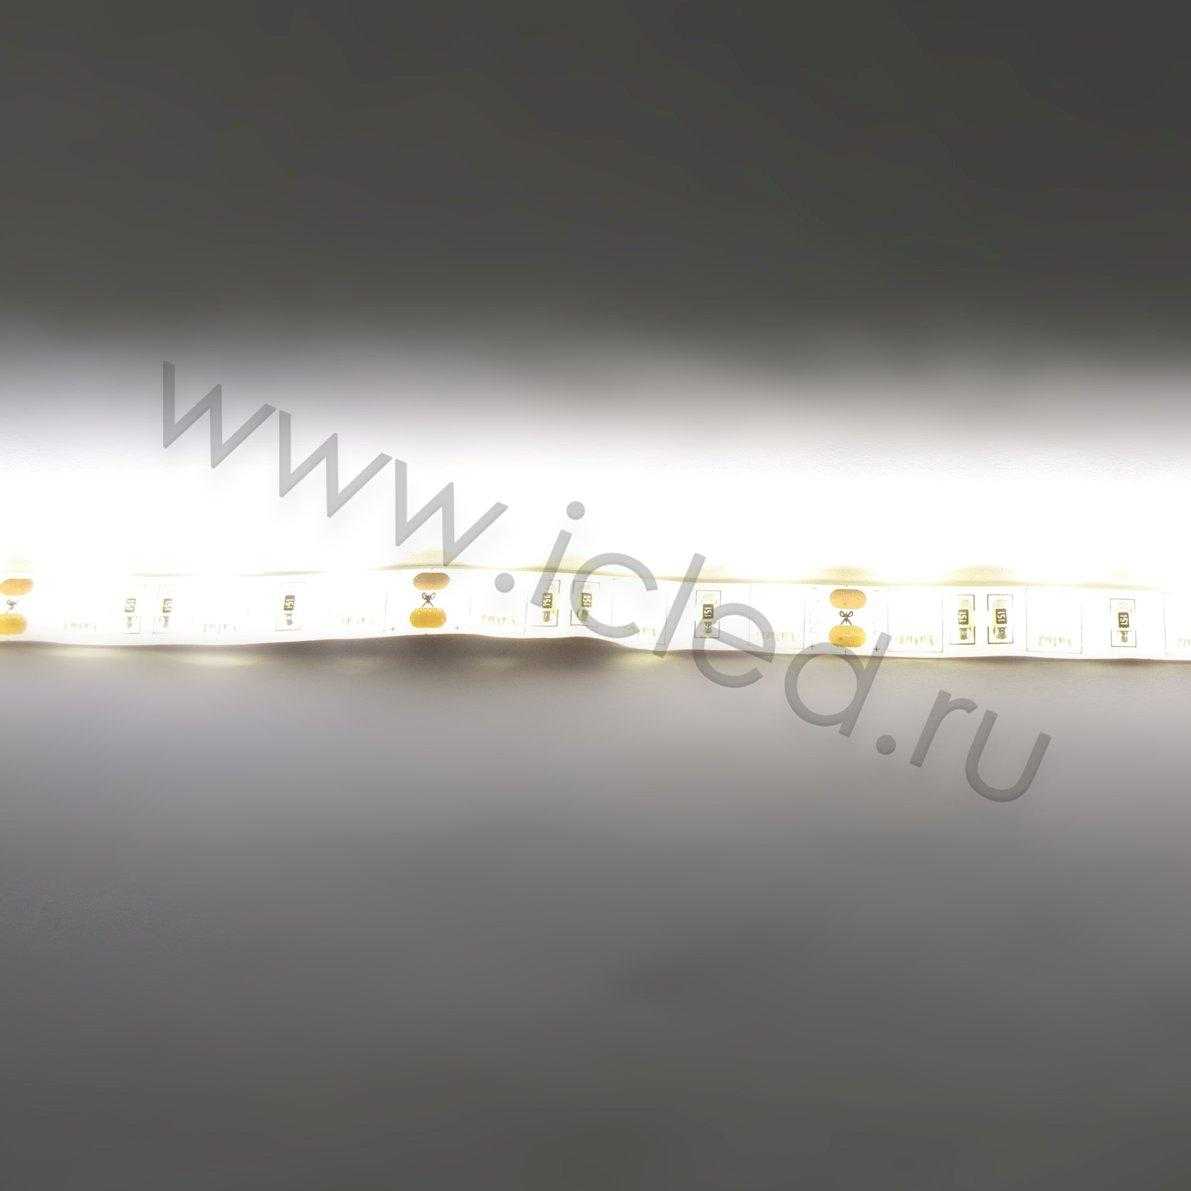 Влагозащищенные светодиодные ленты Светодиодная лента LUX class, 5050, 60 led/m, Warm White,12V, IP65 Icled